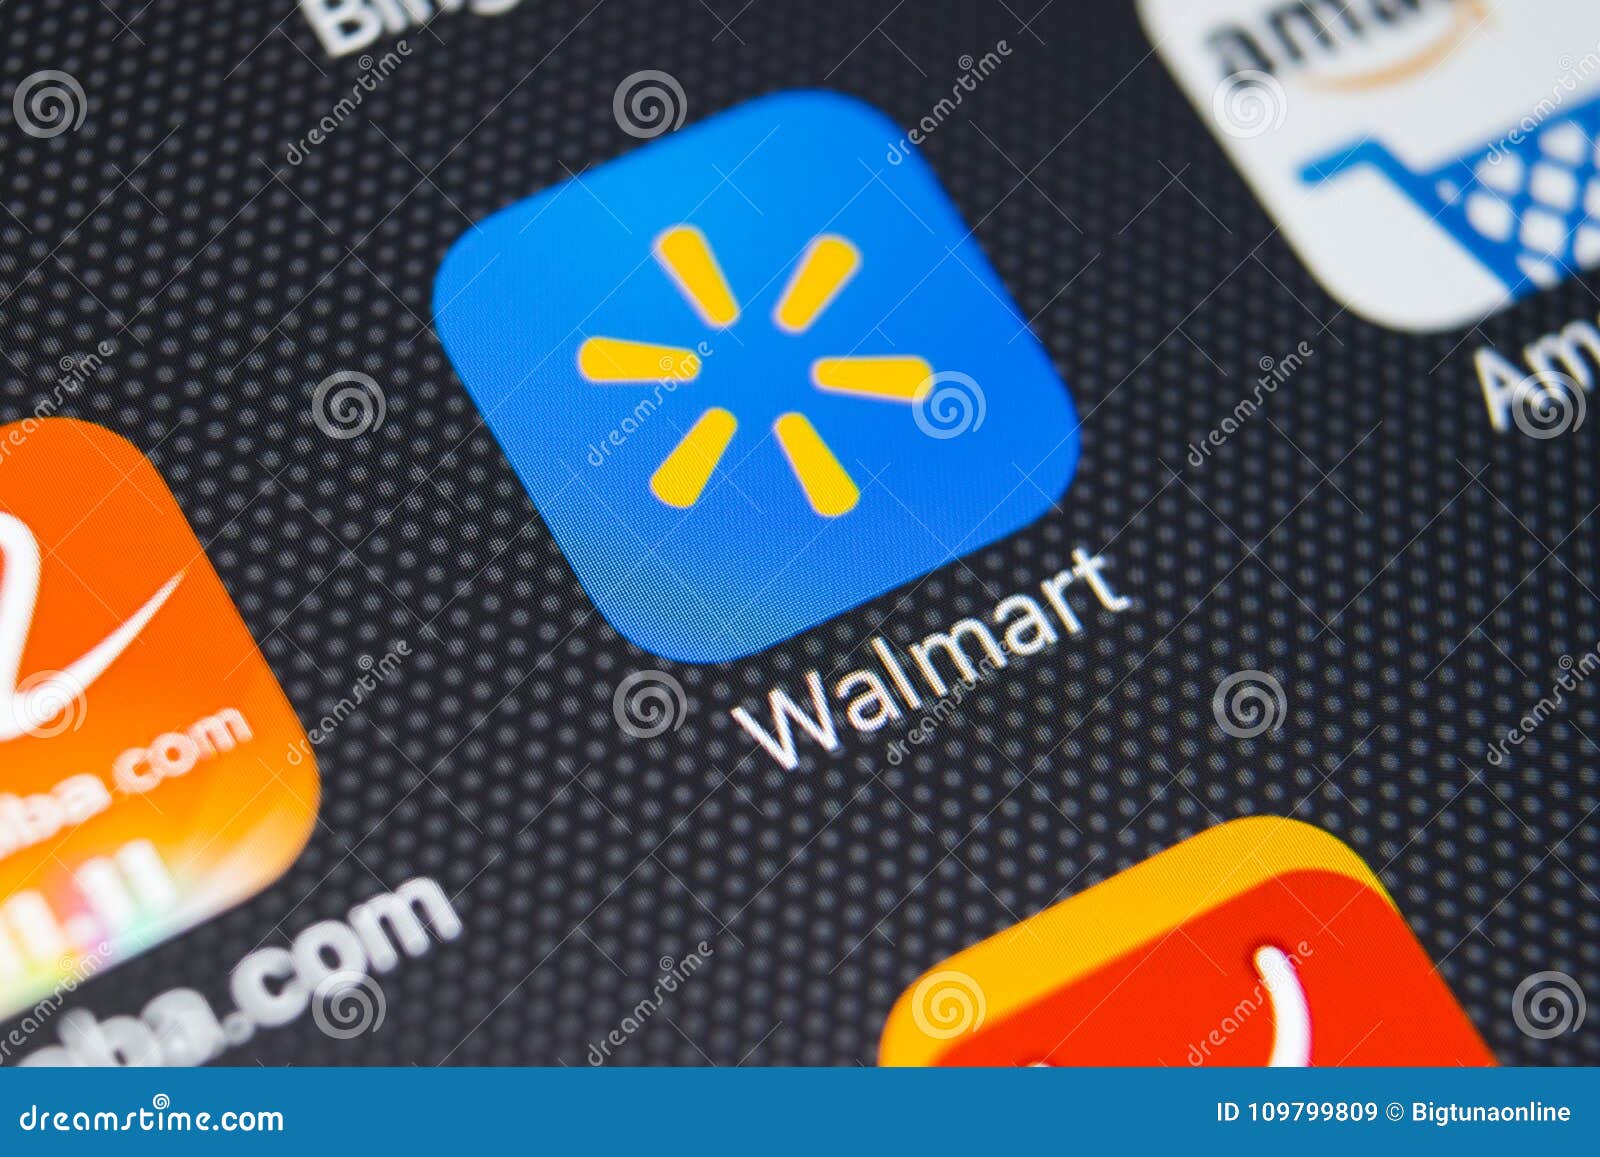 Ícone Da Aplicação De Walmart No Close-up Da Tela Do IPhone X De Apple  Ícone De Walmart App Walmart COM é Multinacional Vendendo Imagem de Stock  Editorial - Imagem de mercado, estados